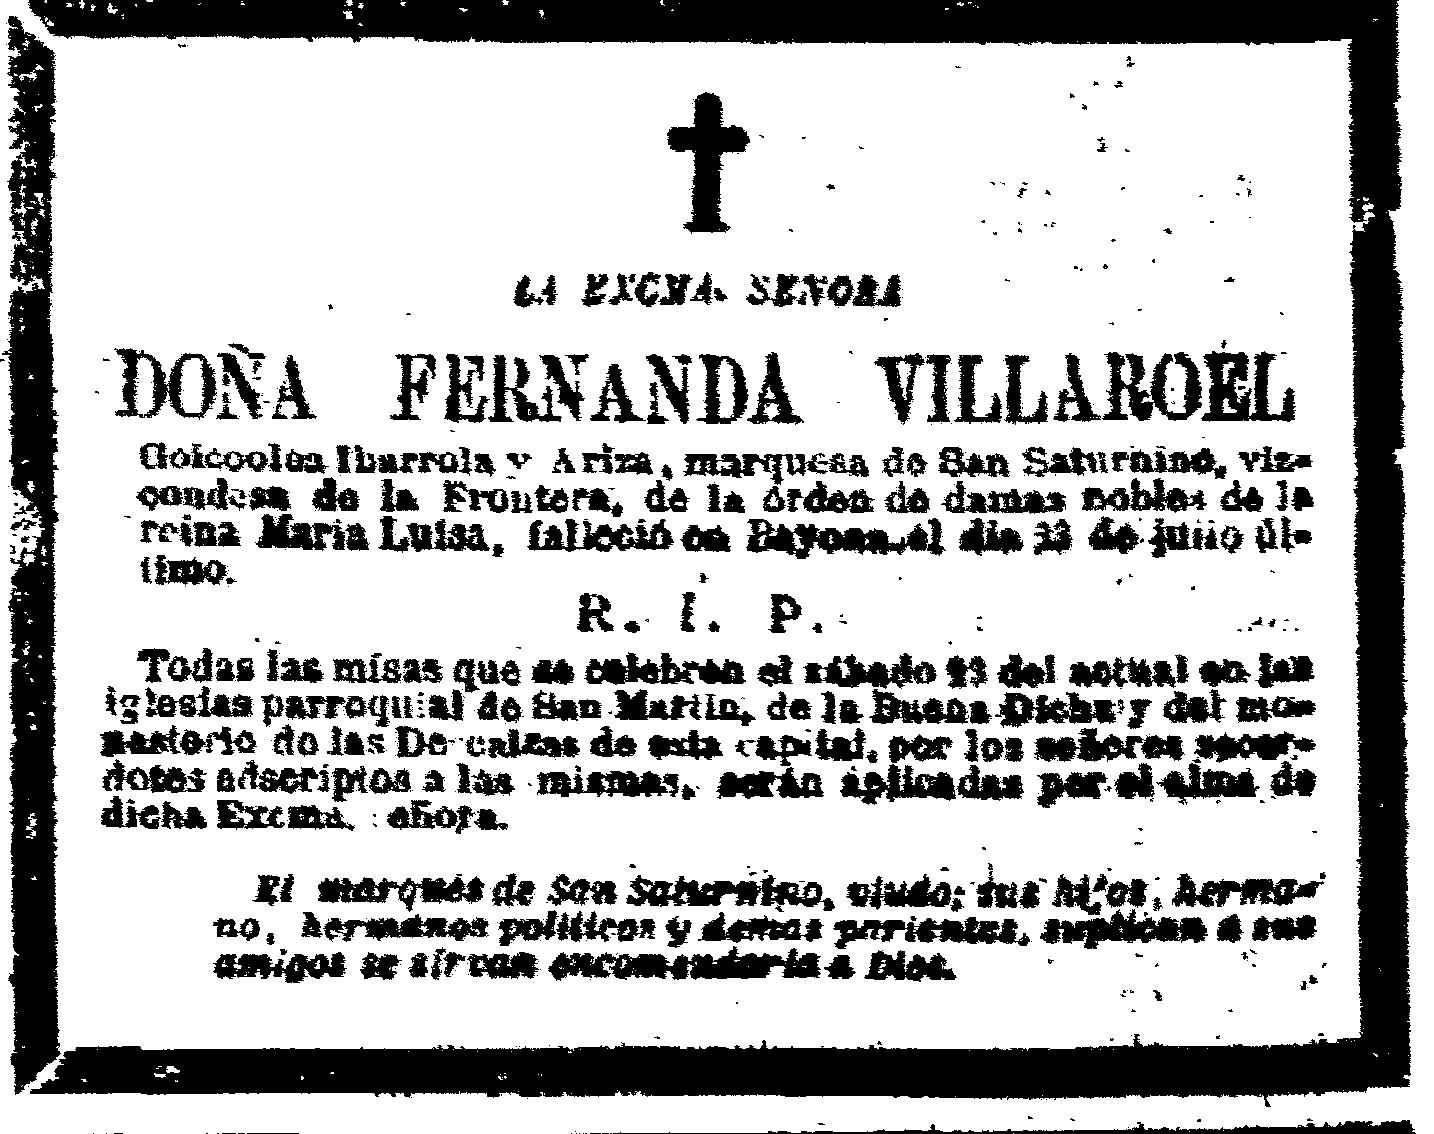 morte-da-muller-do-marques-la-correspondencia-21-8-1873